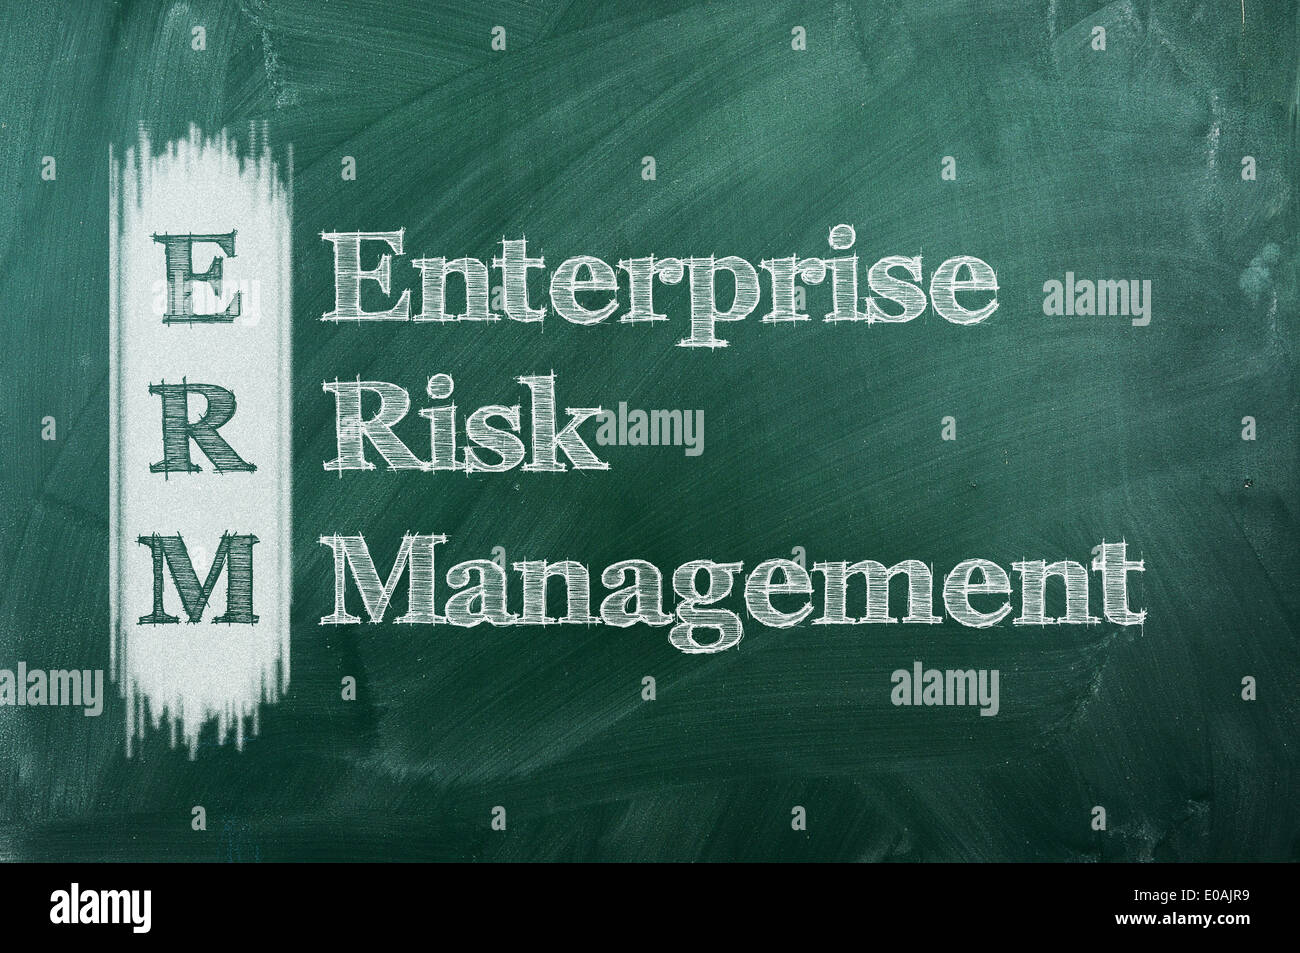 Acronimo erm - enterprise risk management su lavagna verde Foto Stock